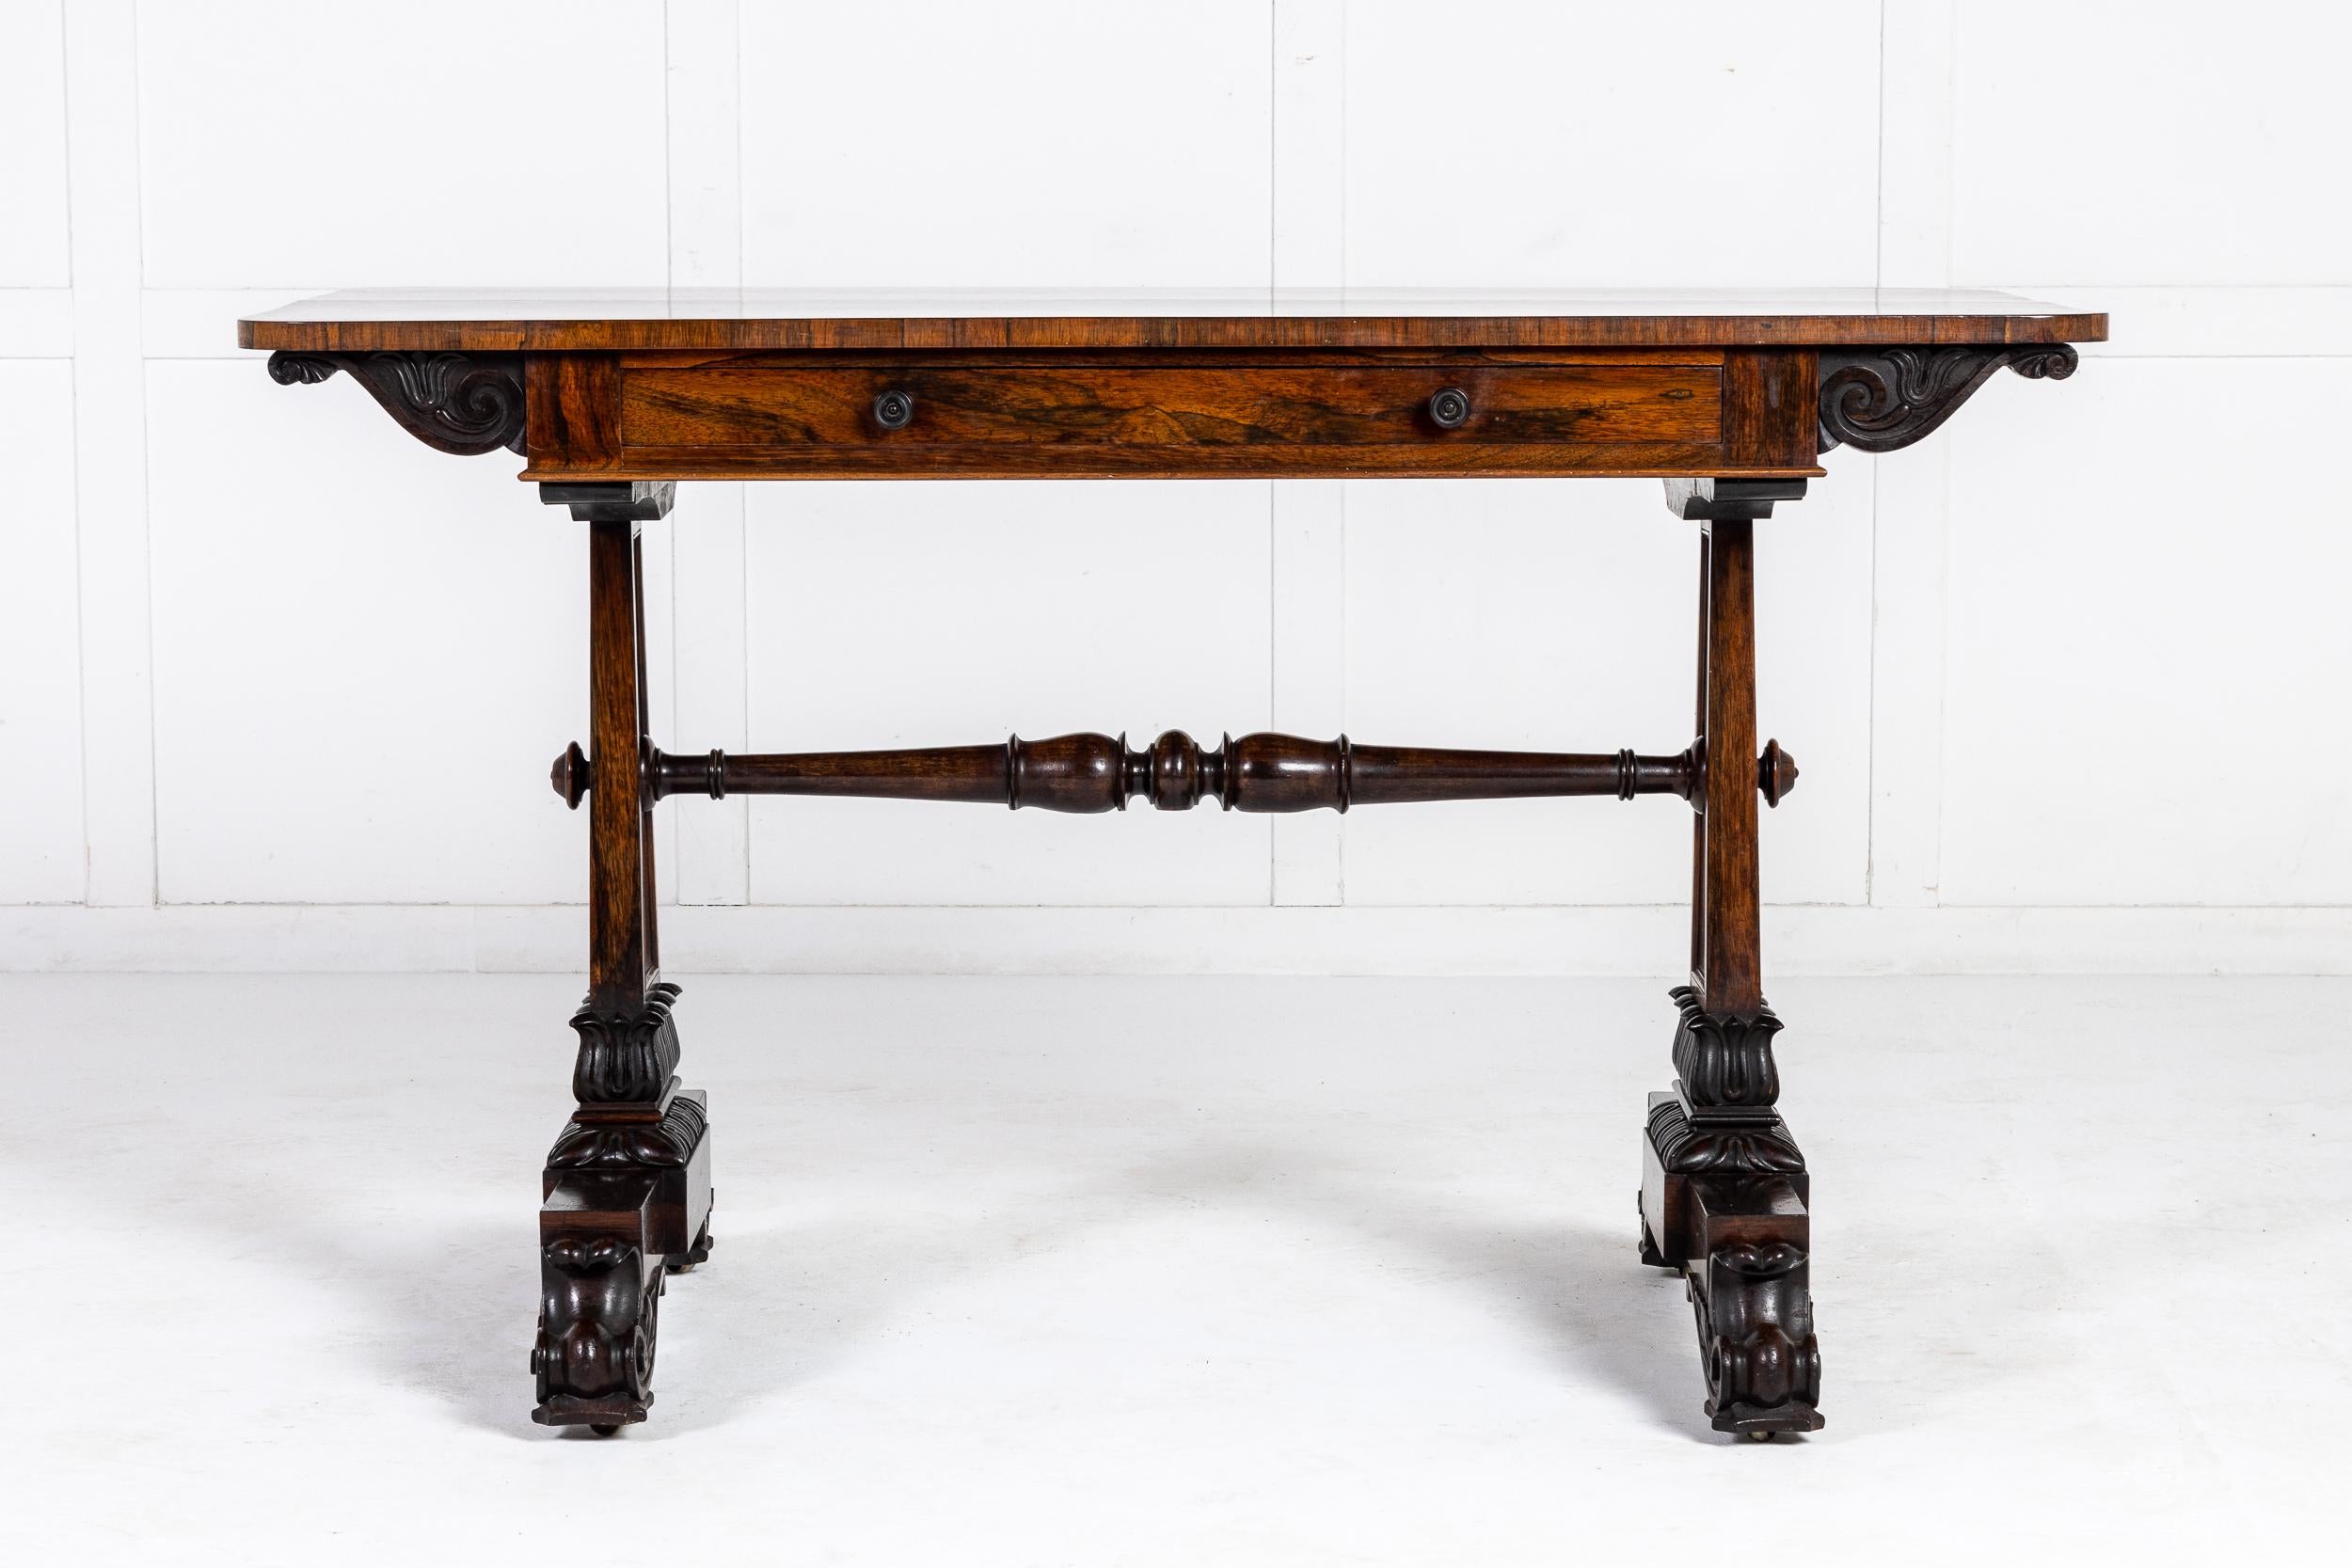 Superbe table d'écriture/bibliothèque en bois de rose du 19e siècle, de bonne qualité, avec une belle finition sur tout le pourtour, ce qui en fait une table autoportante si nécessaire. Le plateau en bois de rose finement figuré présente des angles